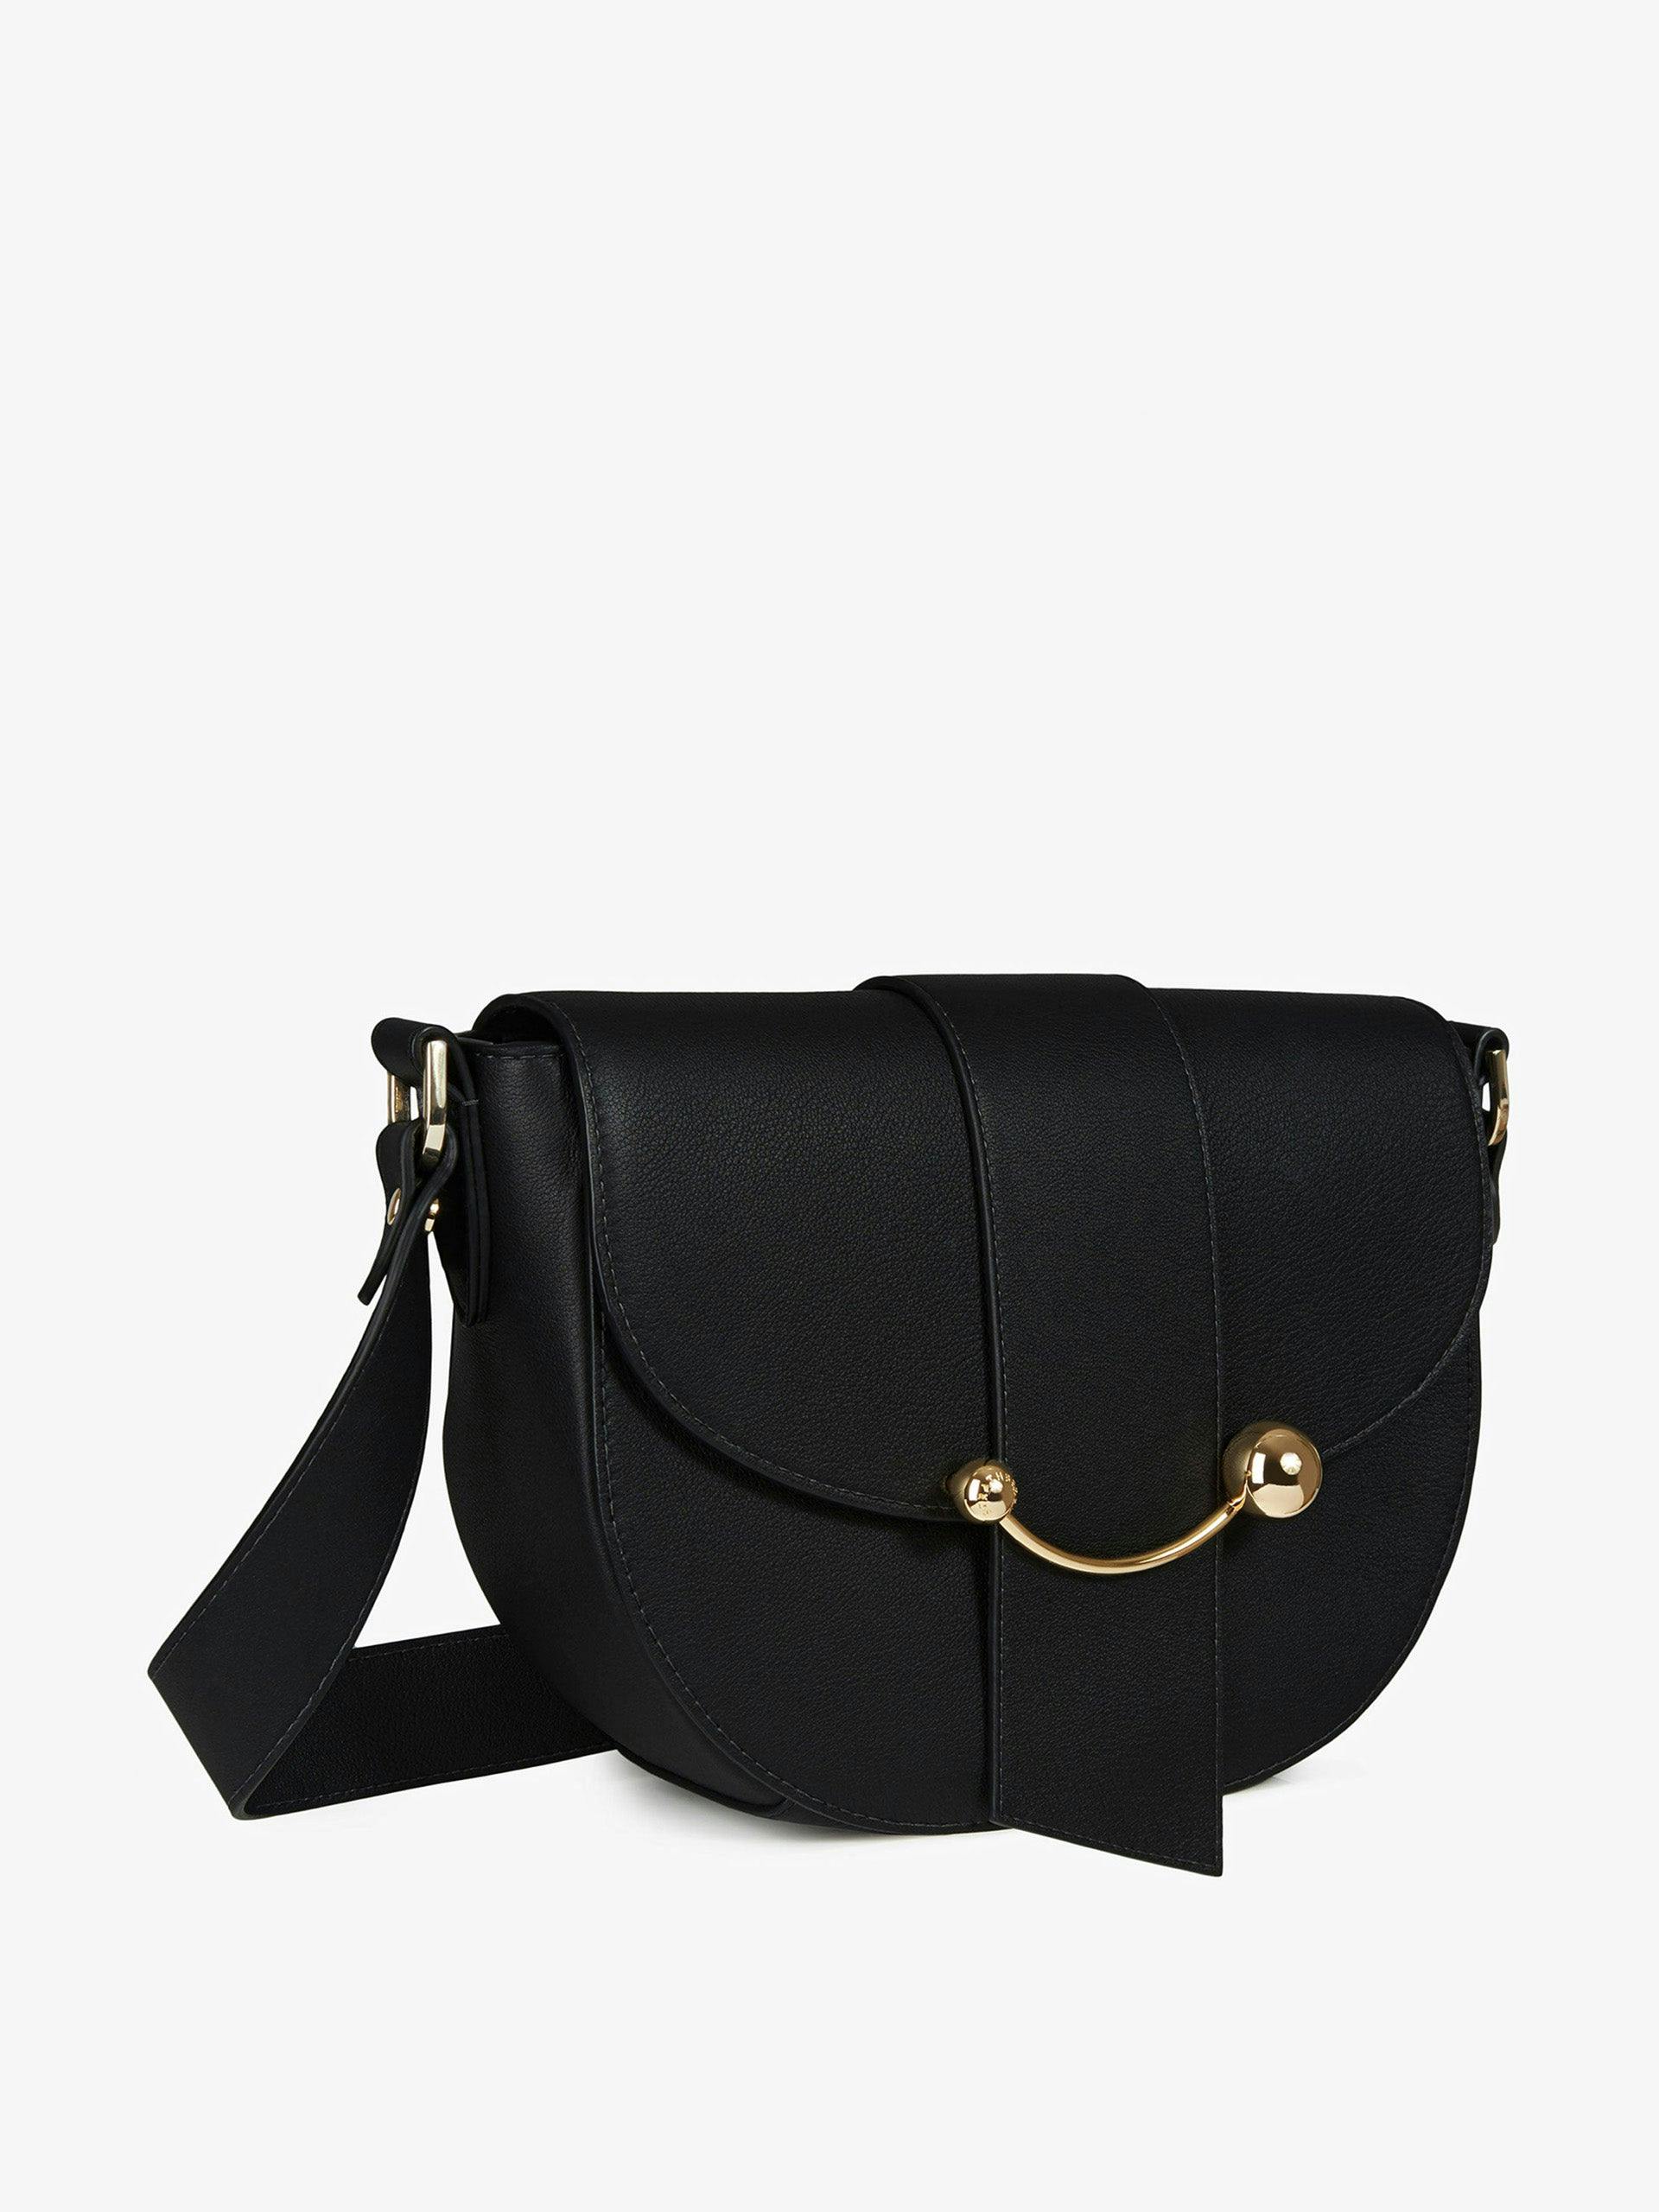 Black Crescent satchel bag